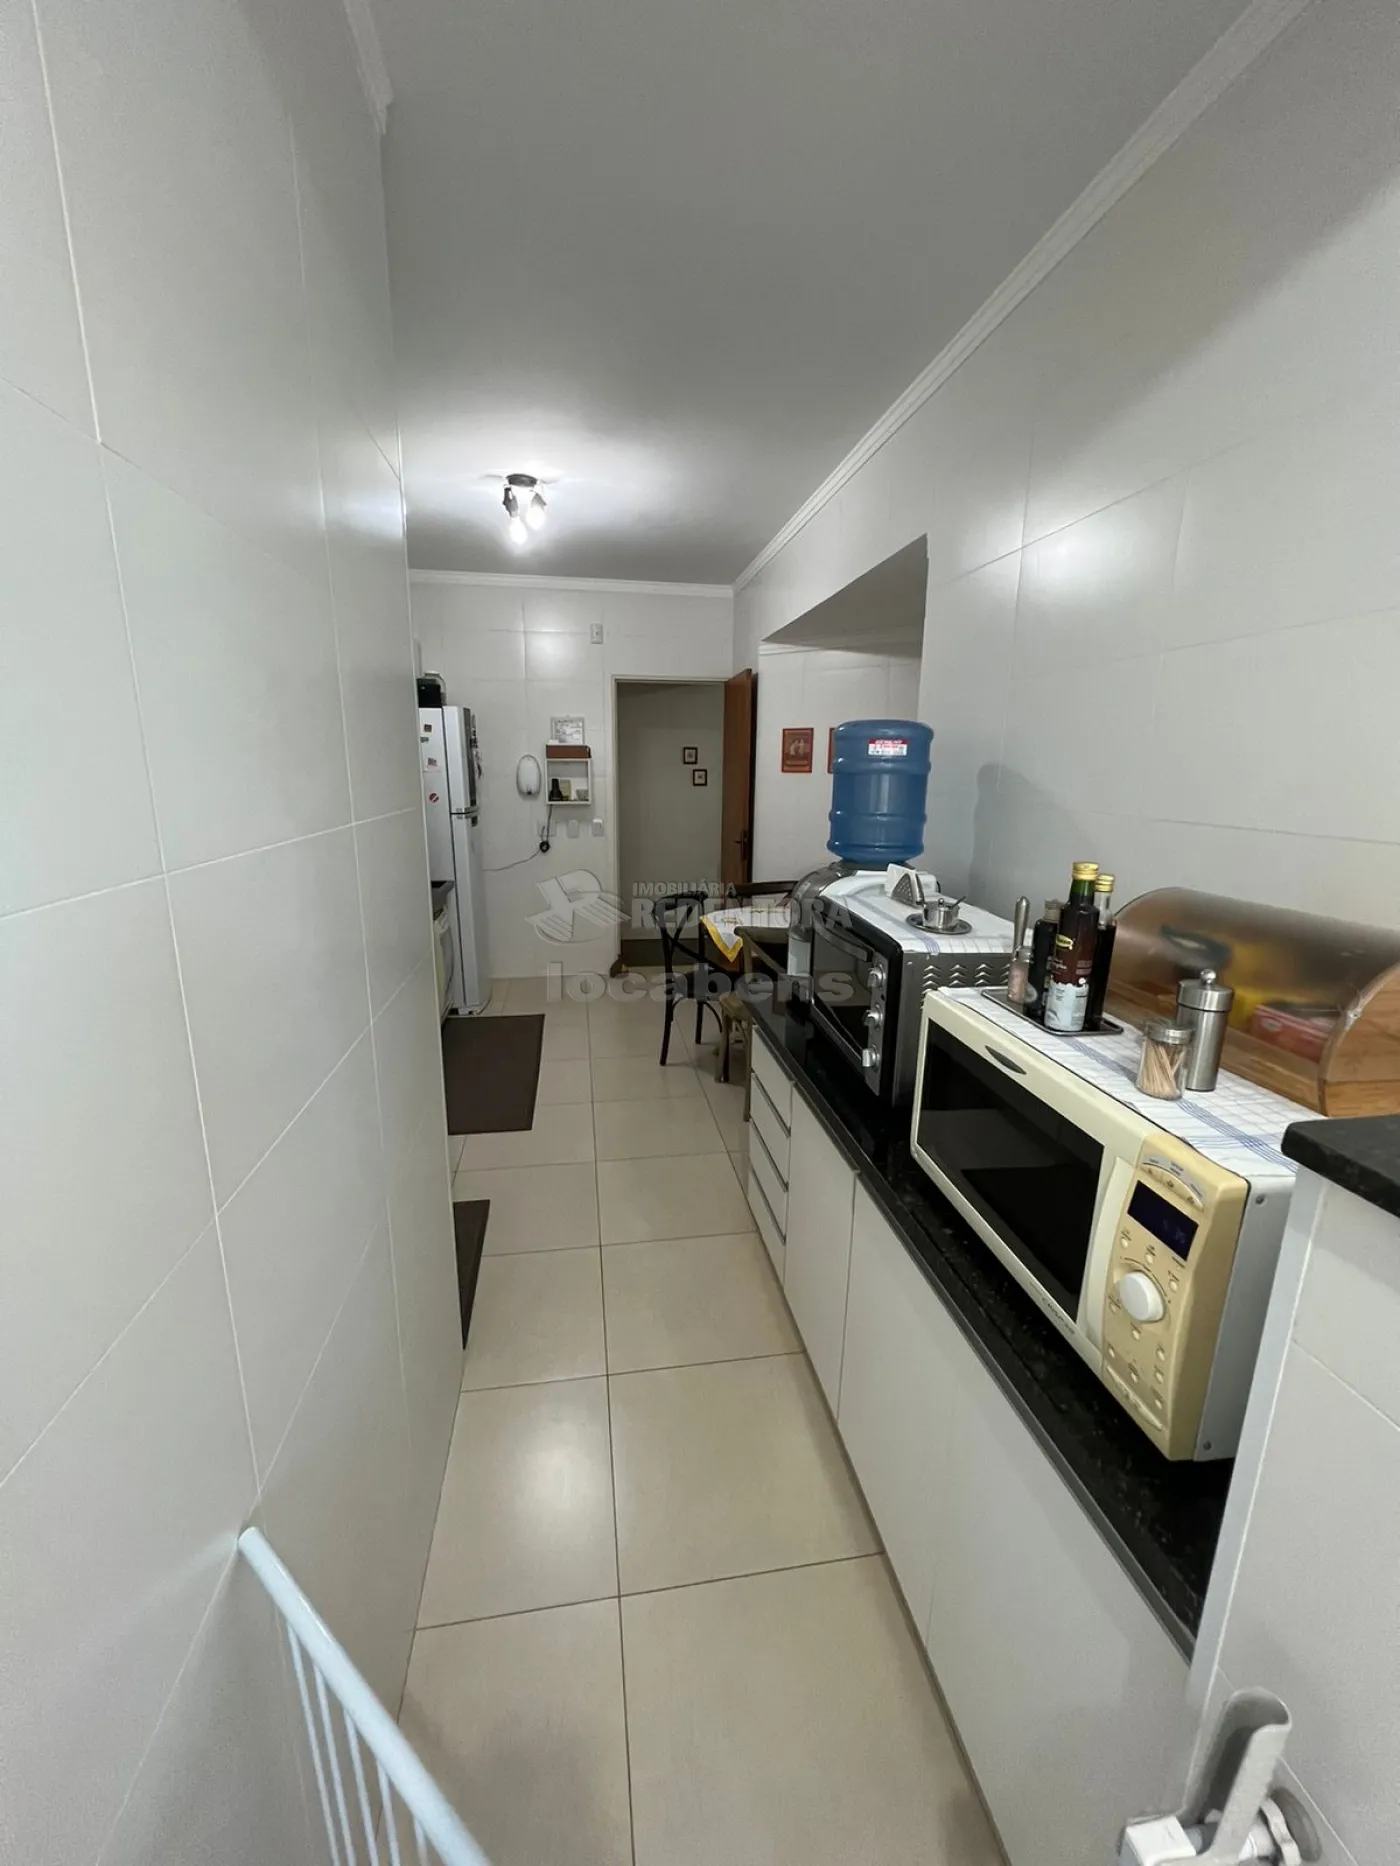 Comprar Apartamento / Padrão em São José do Rio Preto apenas R$ 470.000,00 - Foto 16